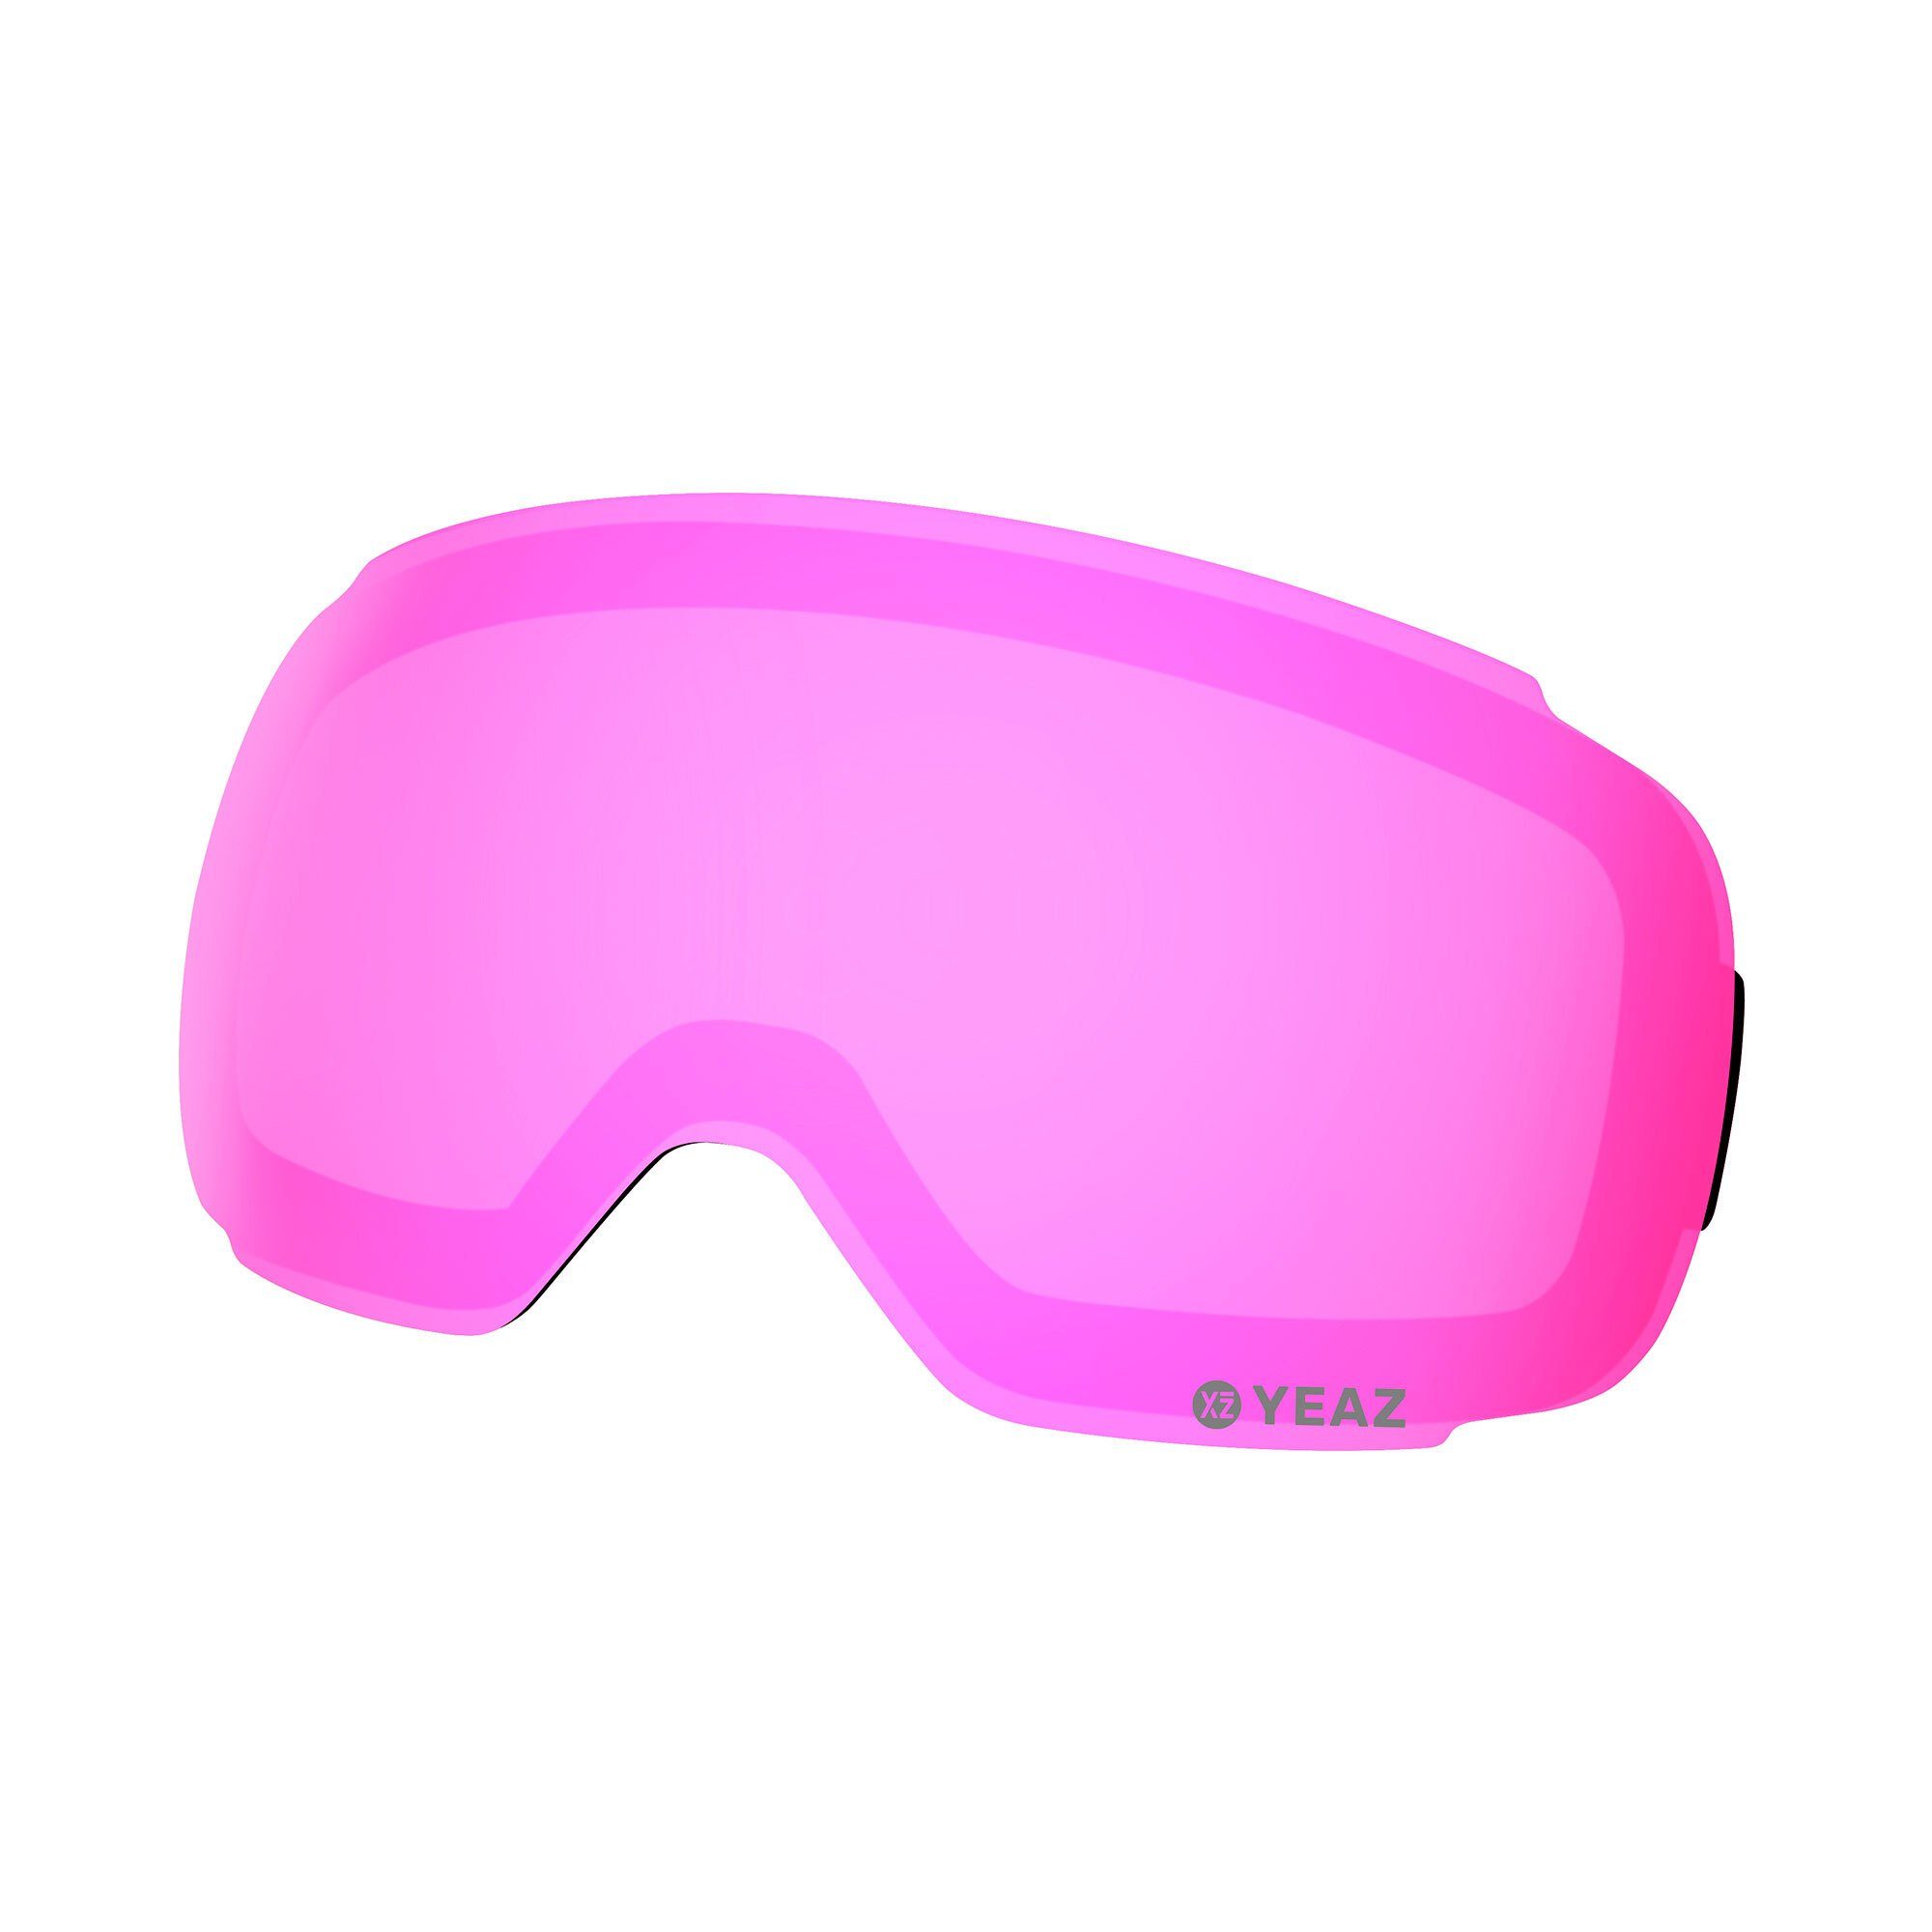 YEAZ Skibrille TWEAK-X wechselglas für ski- snowboardbrille, Magnetisches Wechselglas pink verspiegelt | Brillen